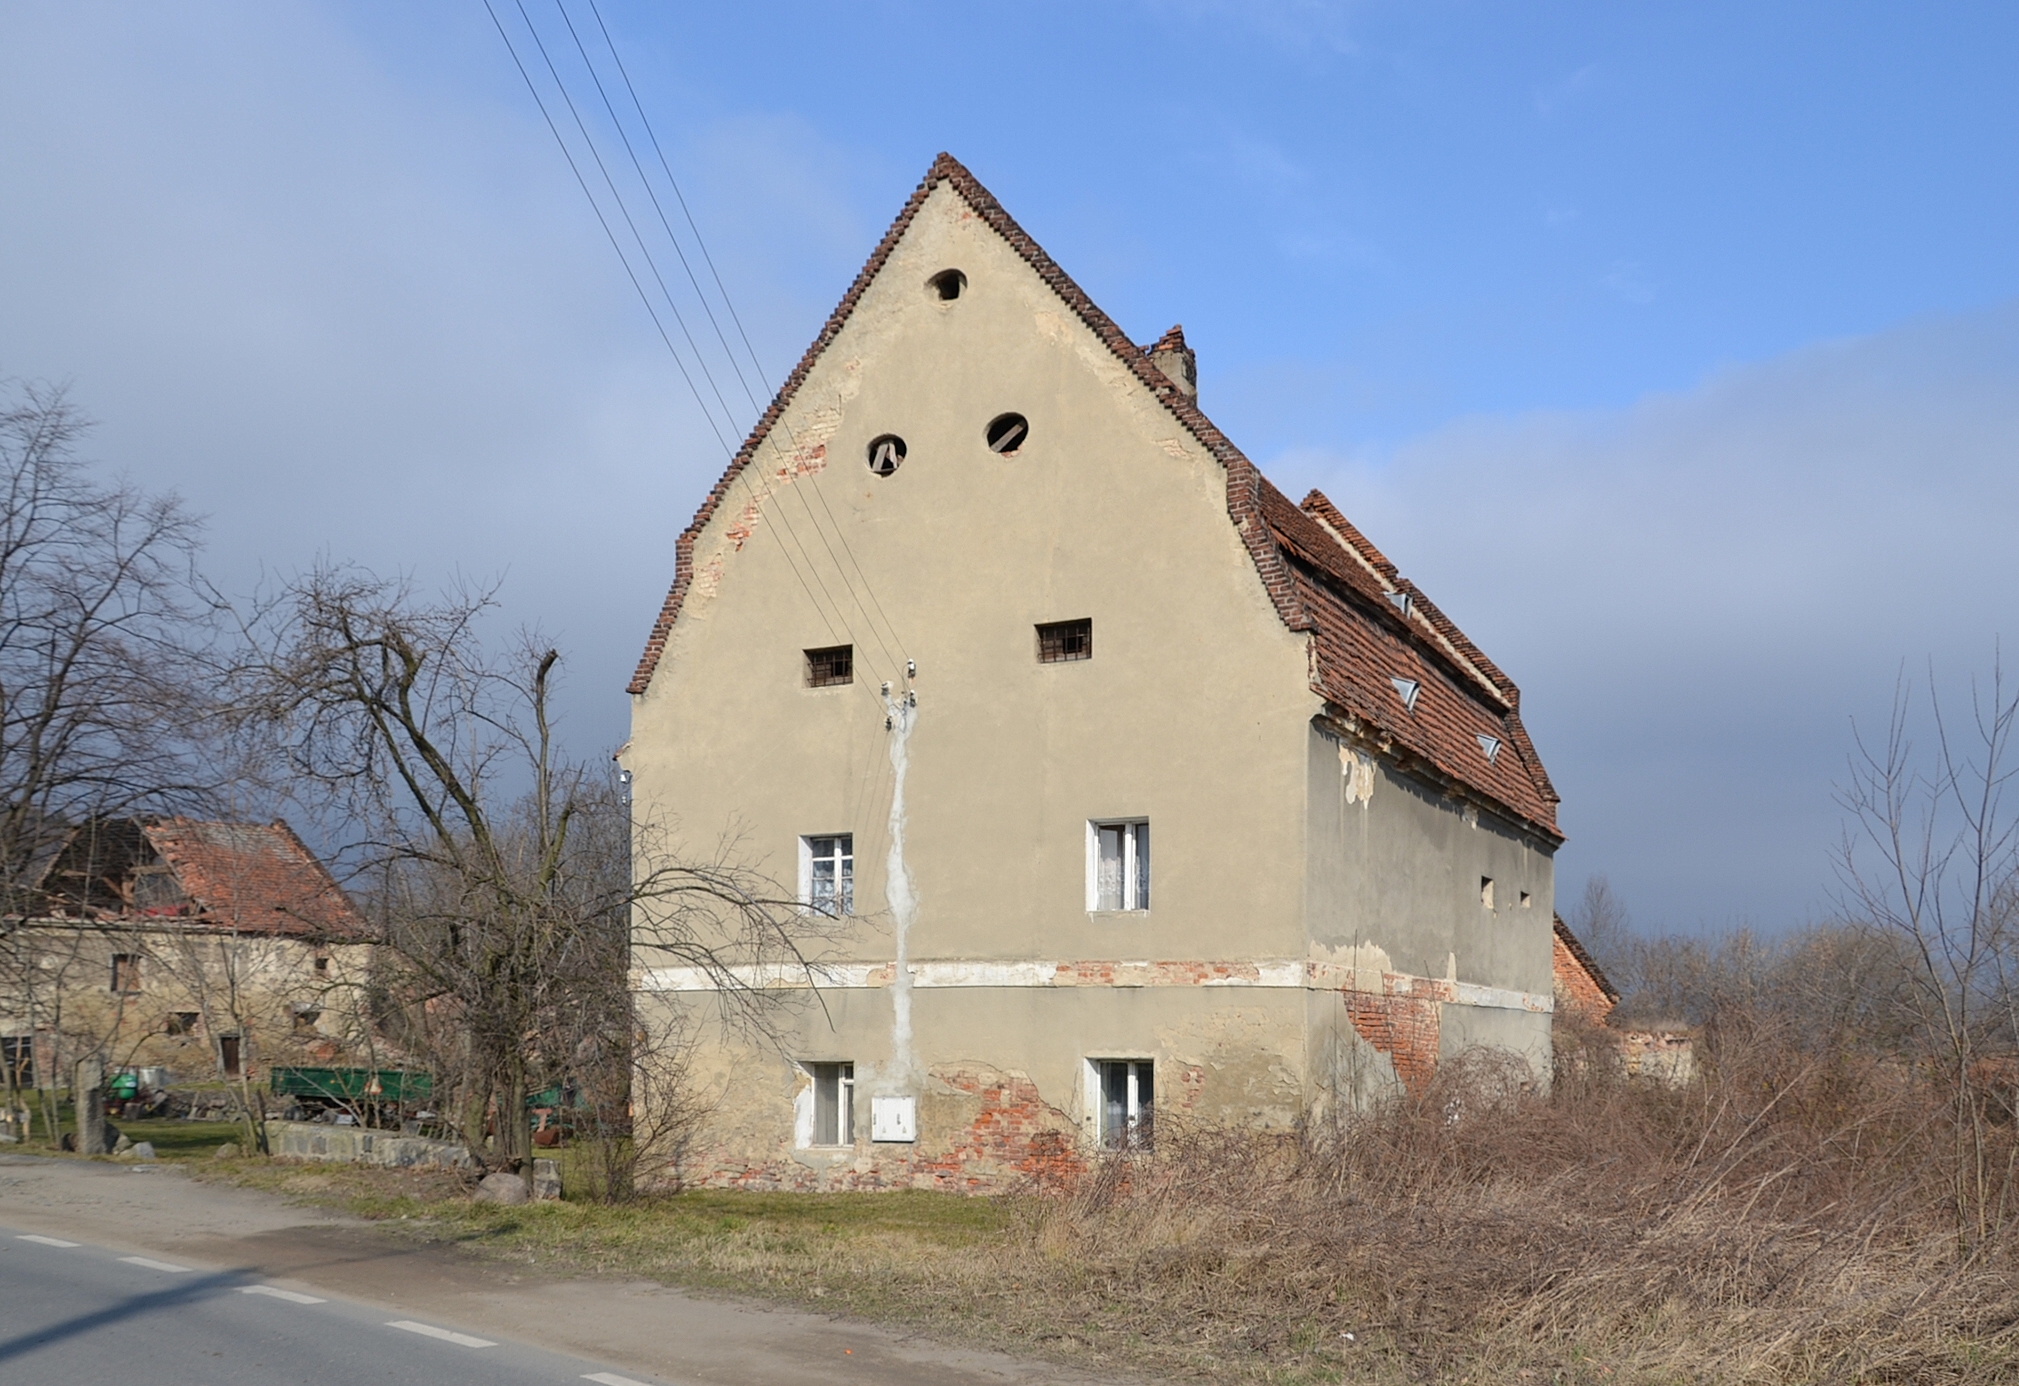 Strzegomiany (Striegelmühle) - granary